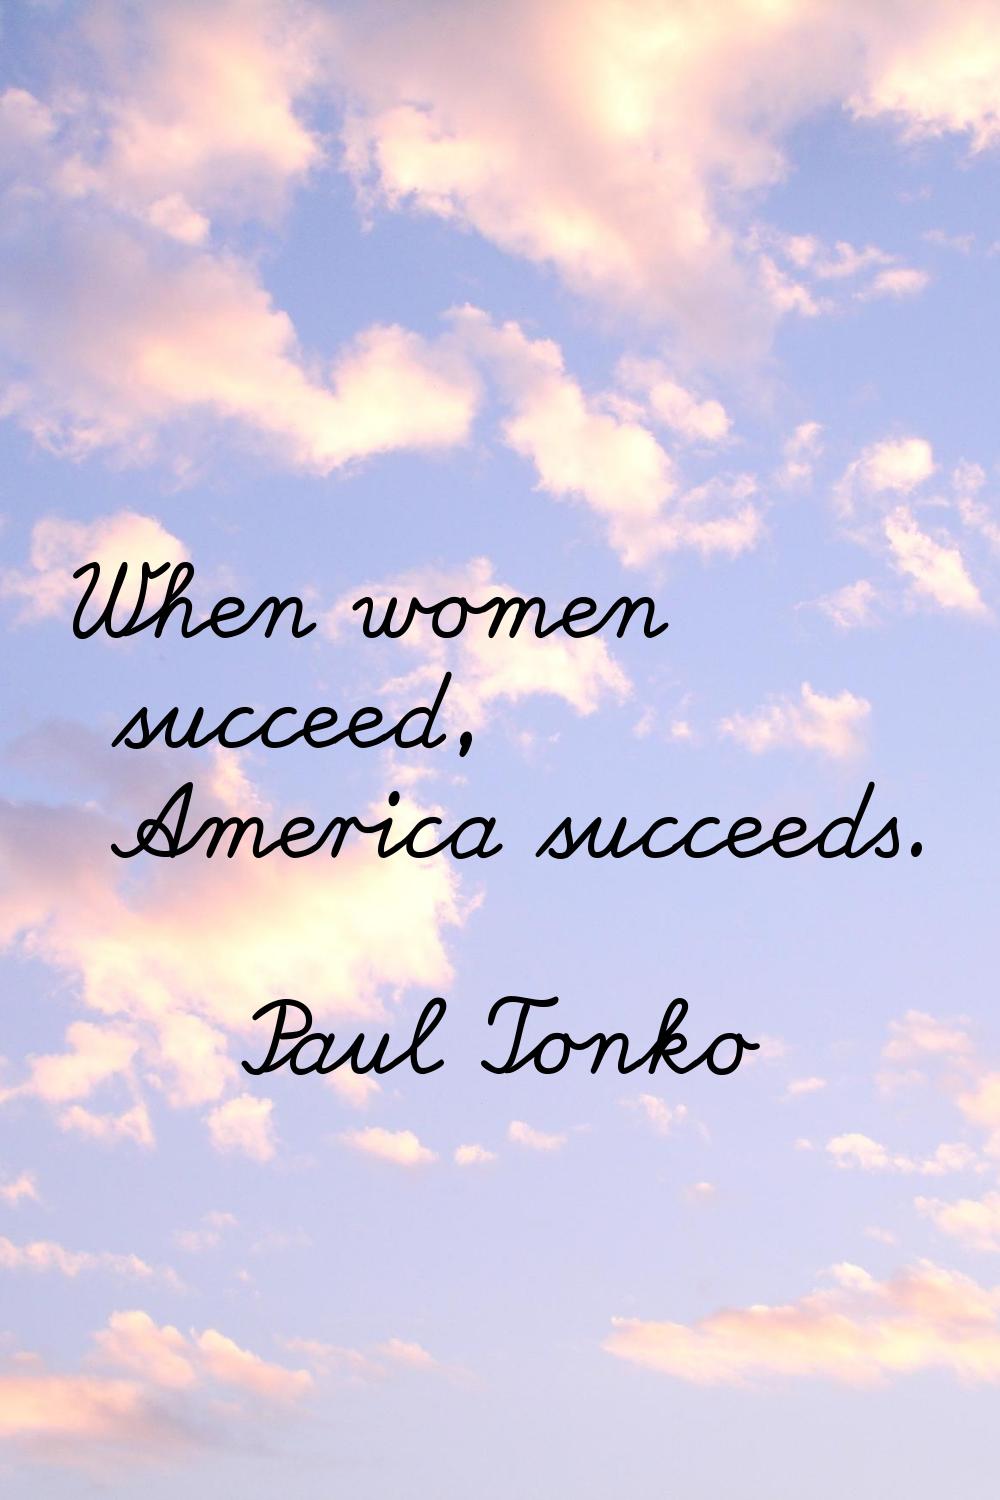 When women succeed, America succeeds.